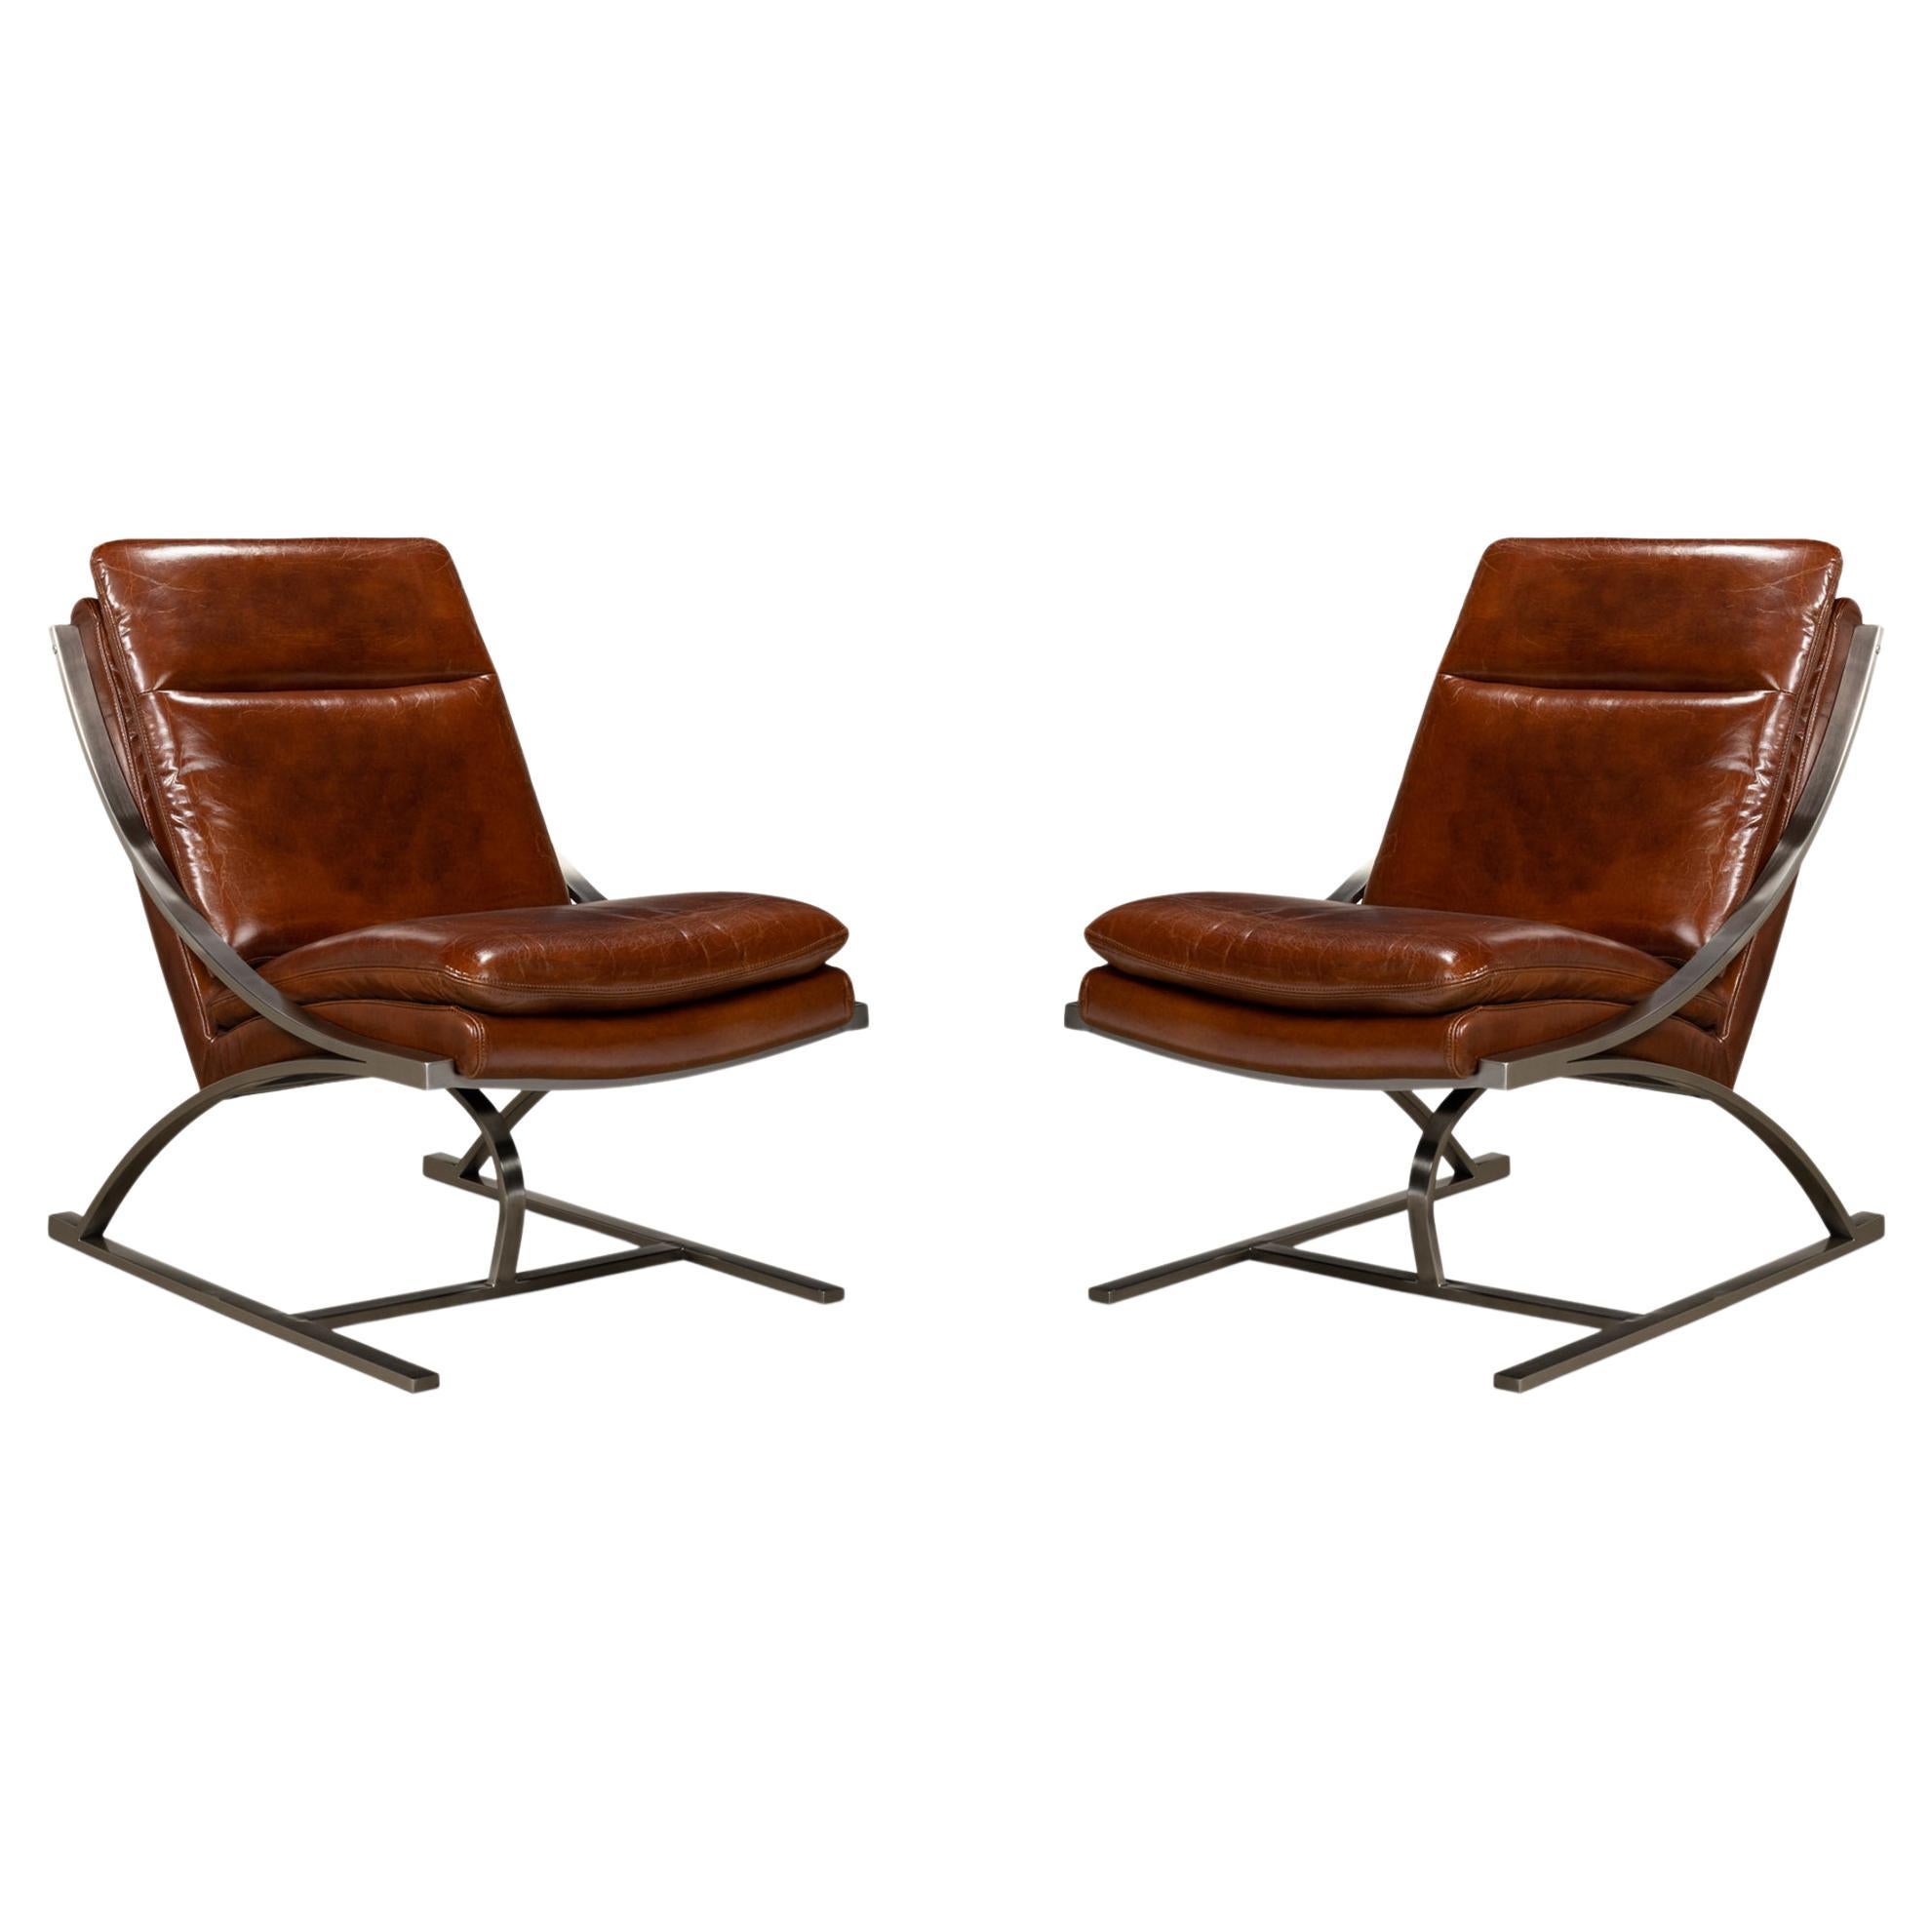 Paire de chaises Modernes en acier inoxydable et cuir Brown